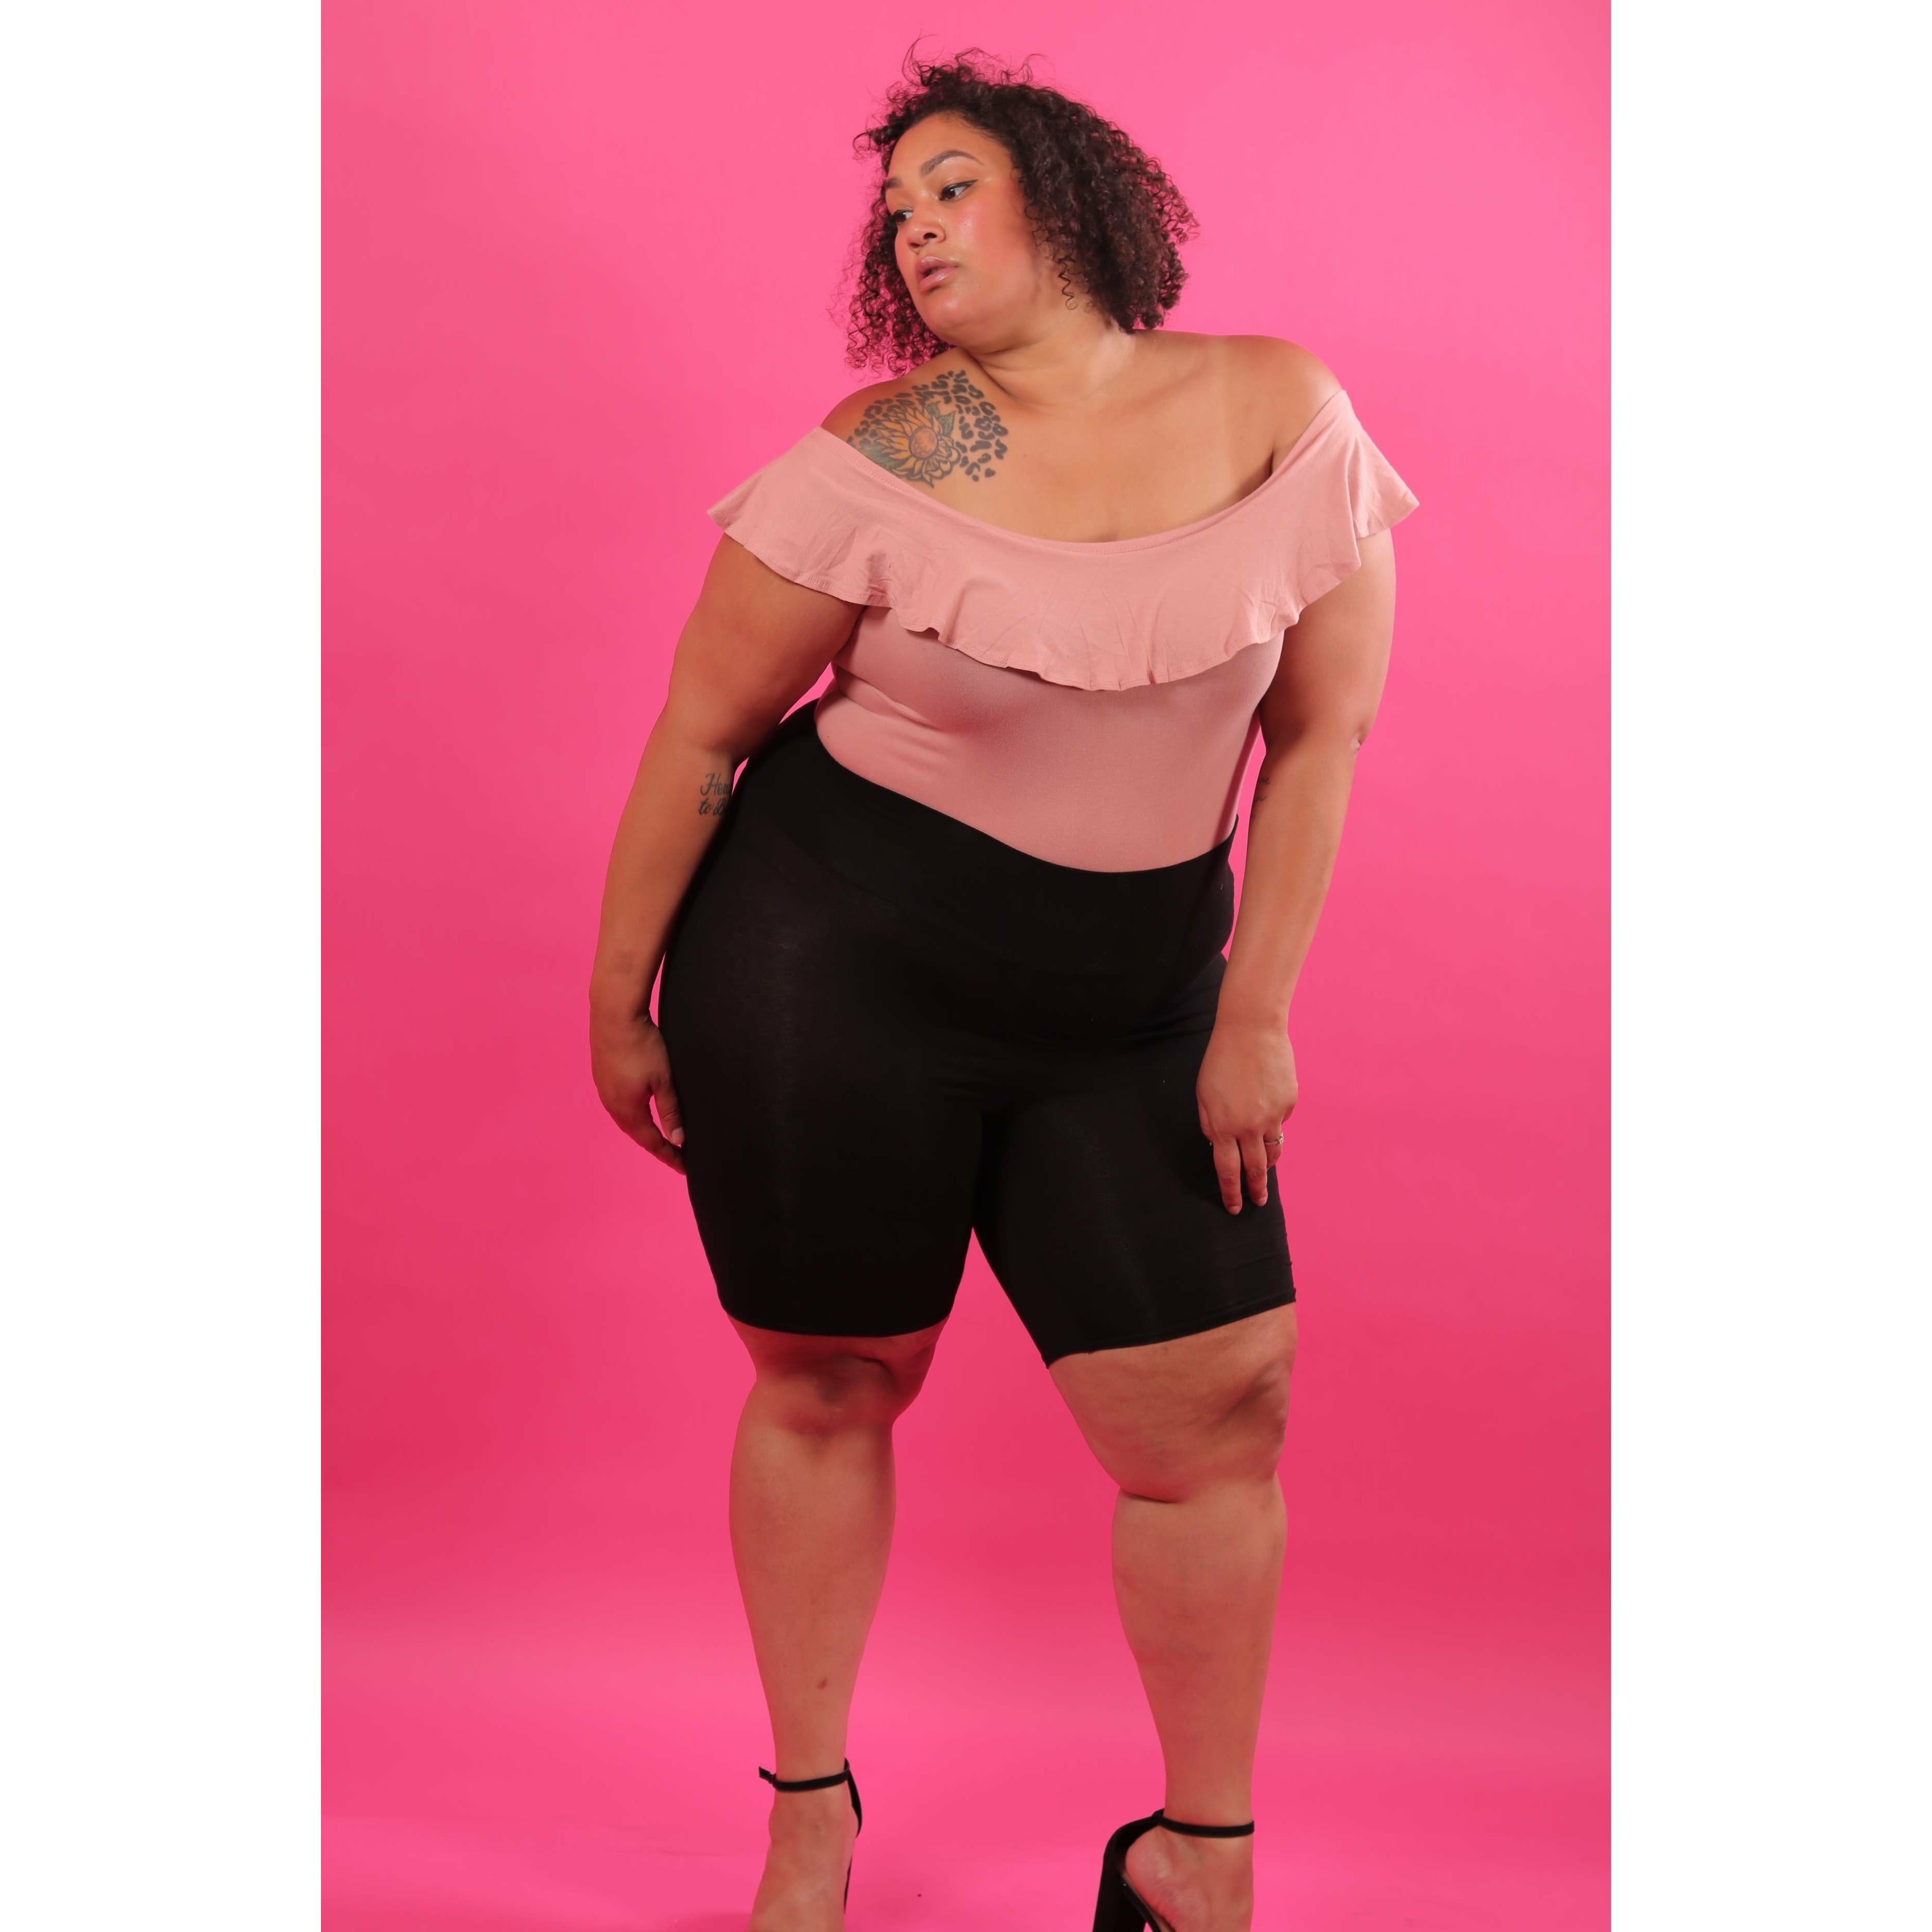 Make Me Blush Plus Size Bodysuit make-me-blush-bodysuit Top 1X,2X,3X Curvy Collection